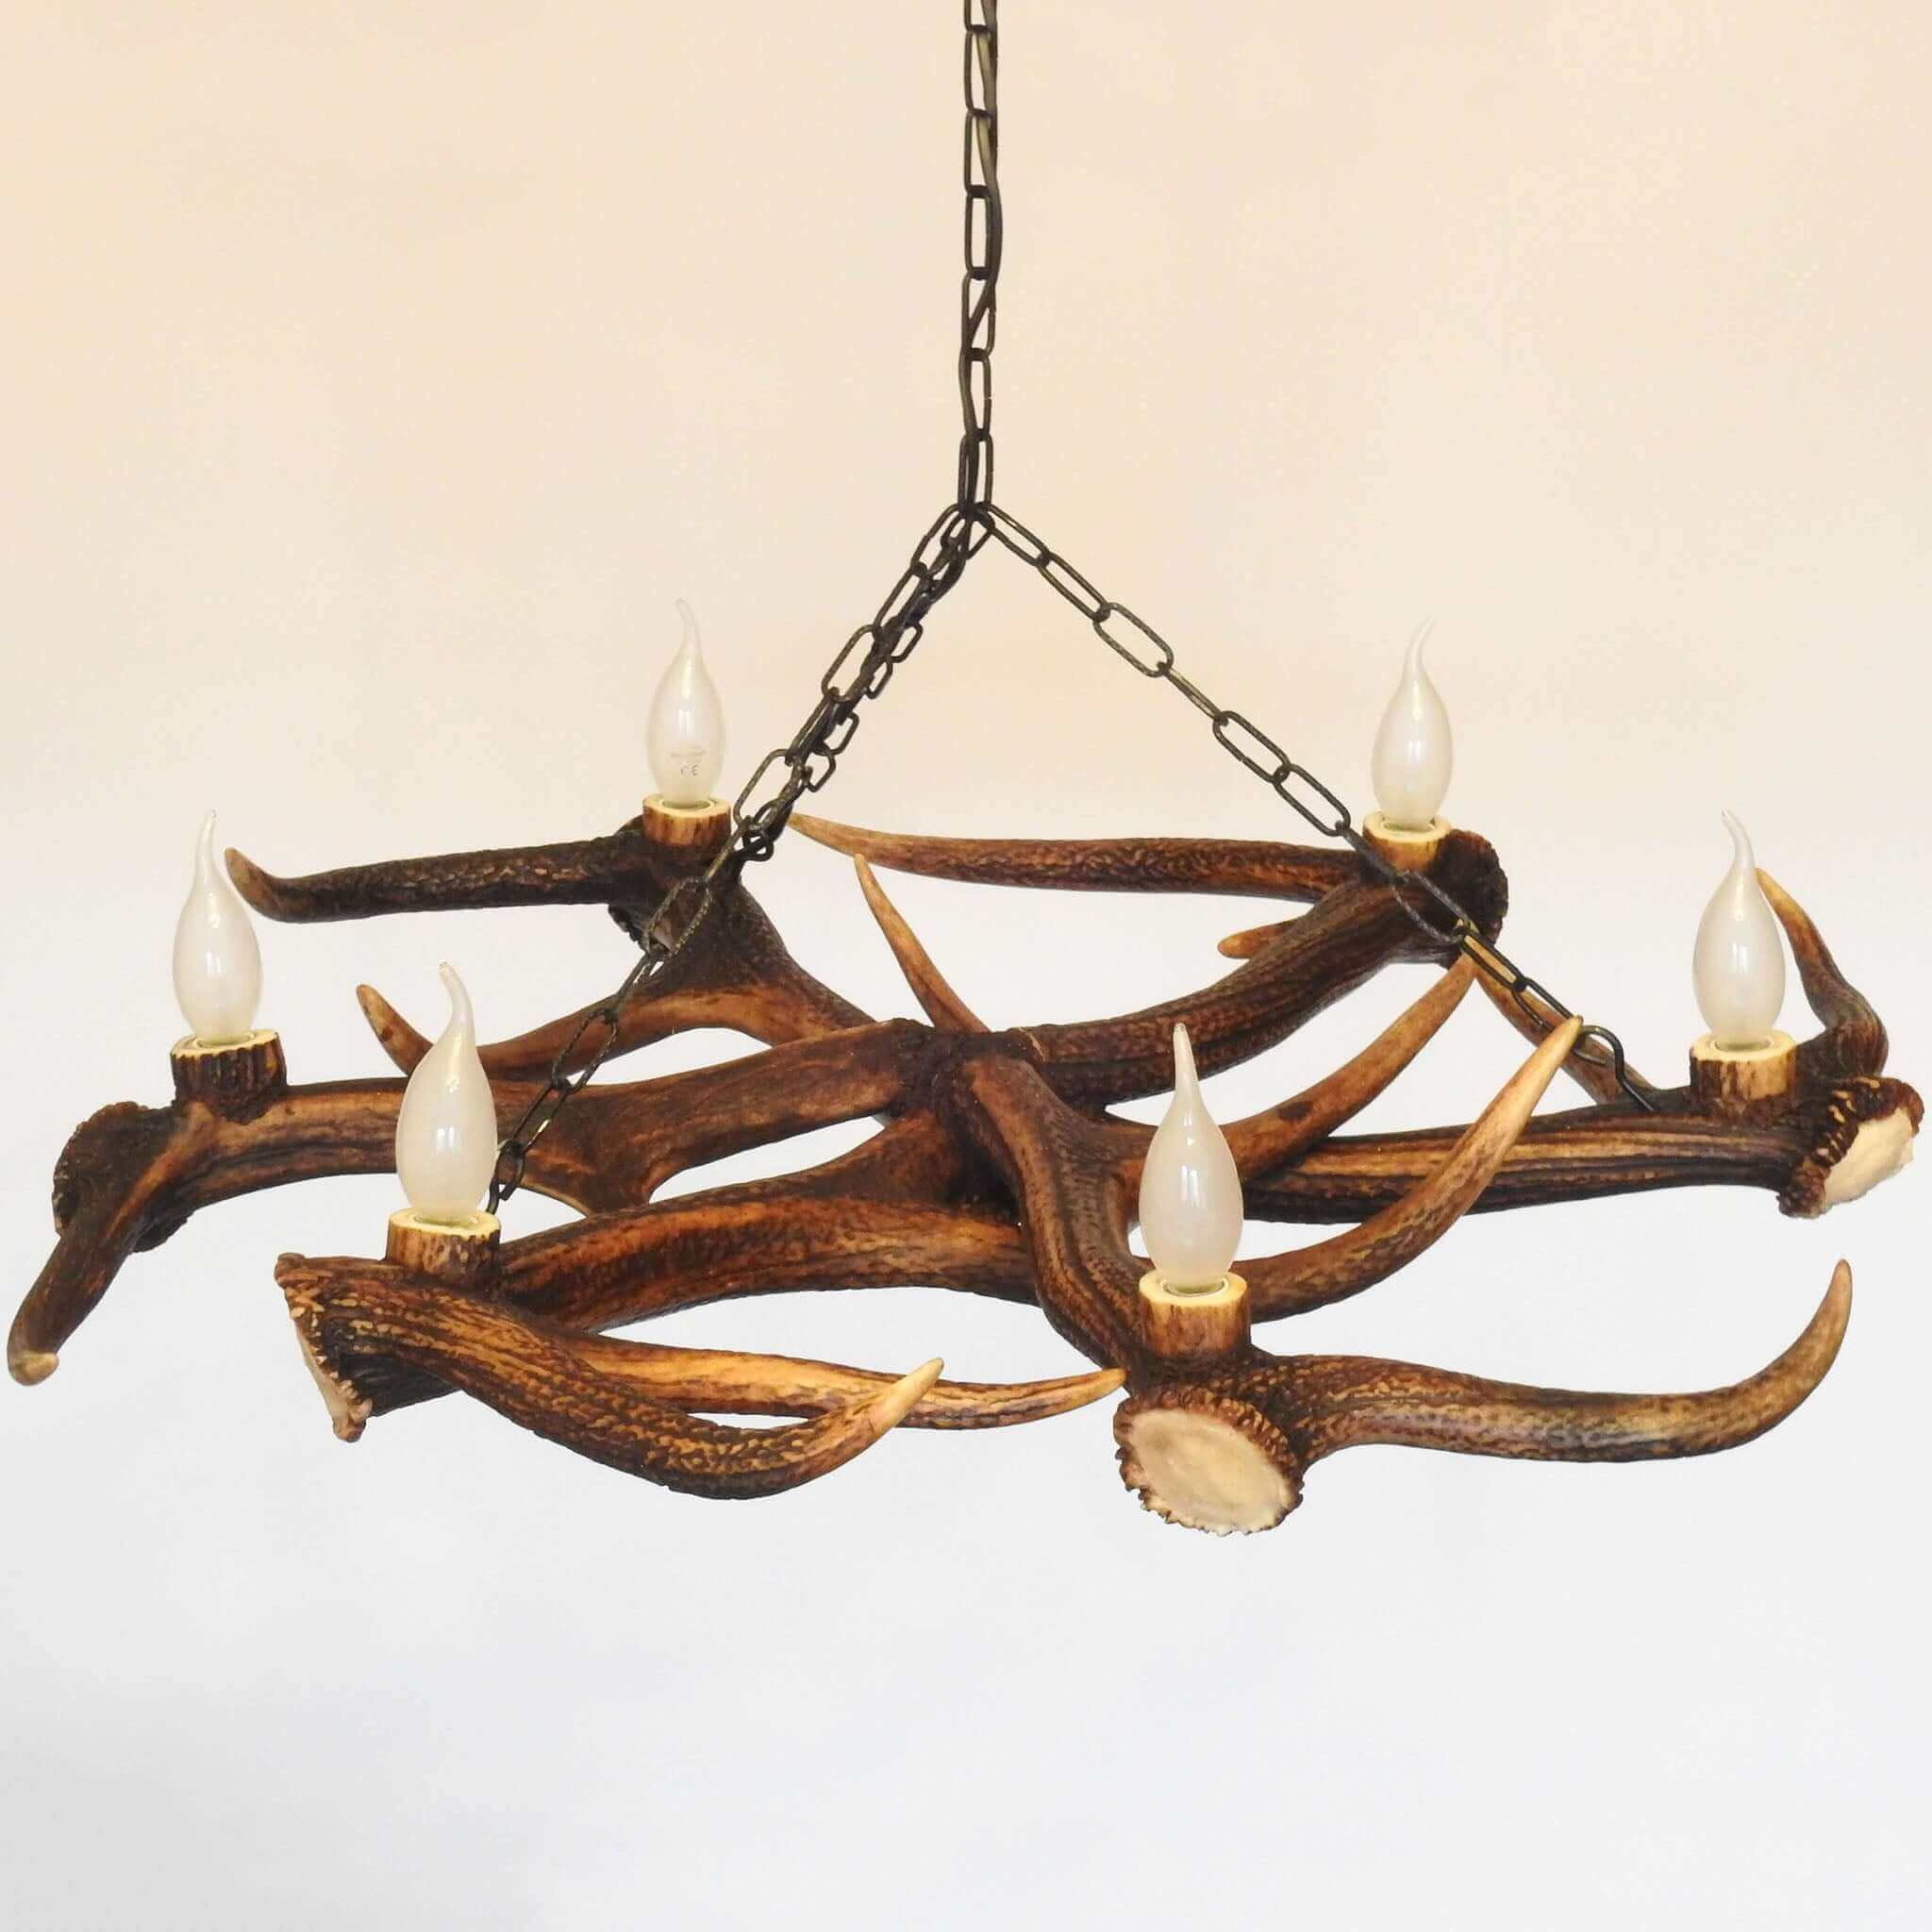 Deer antler chandelier for farmhouse.